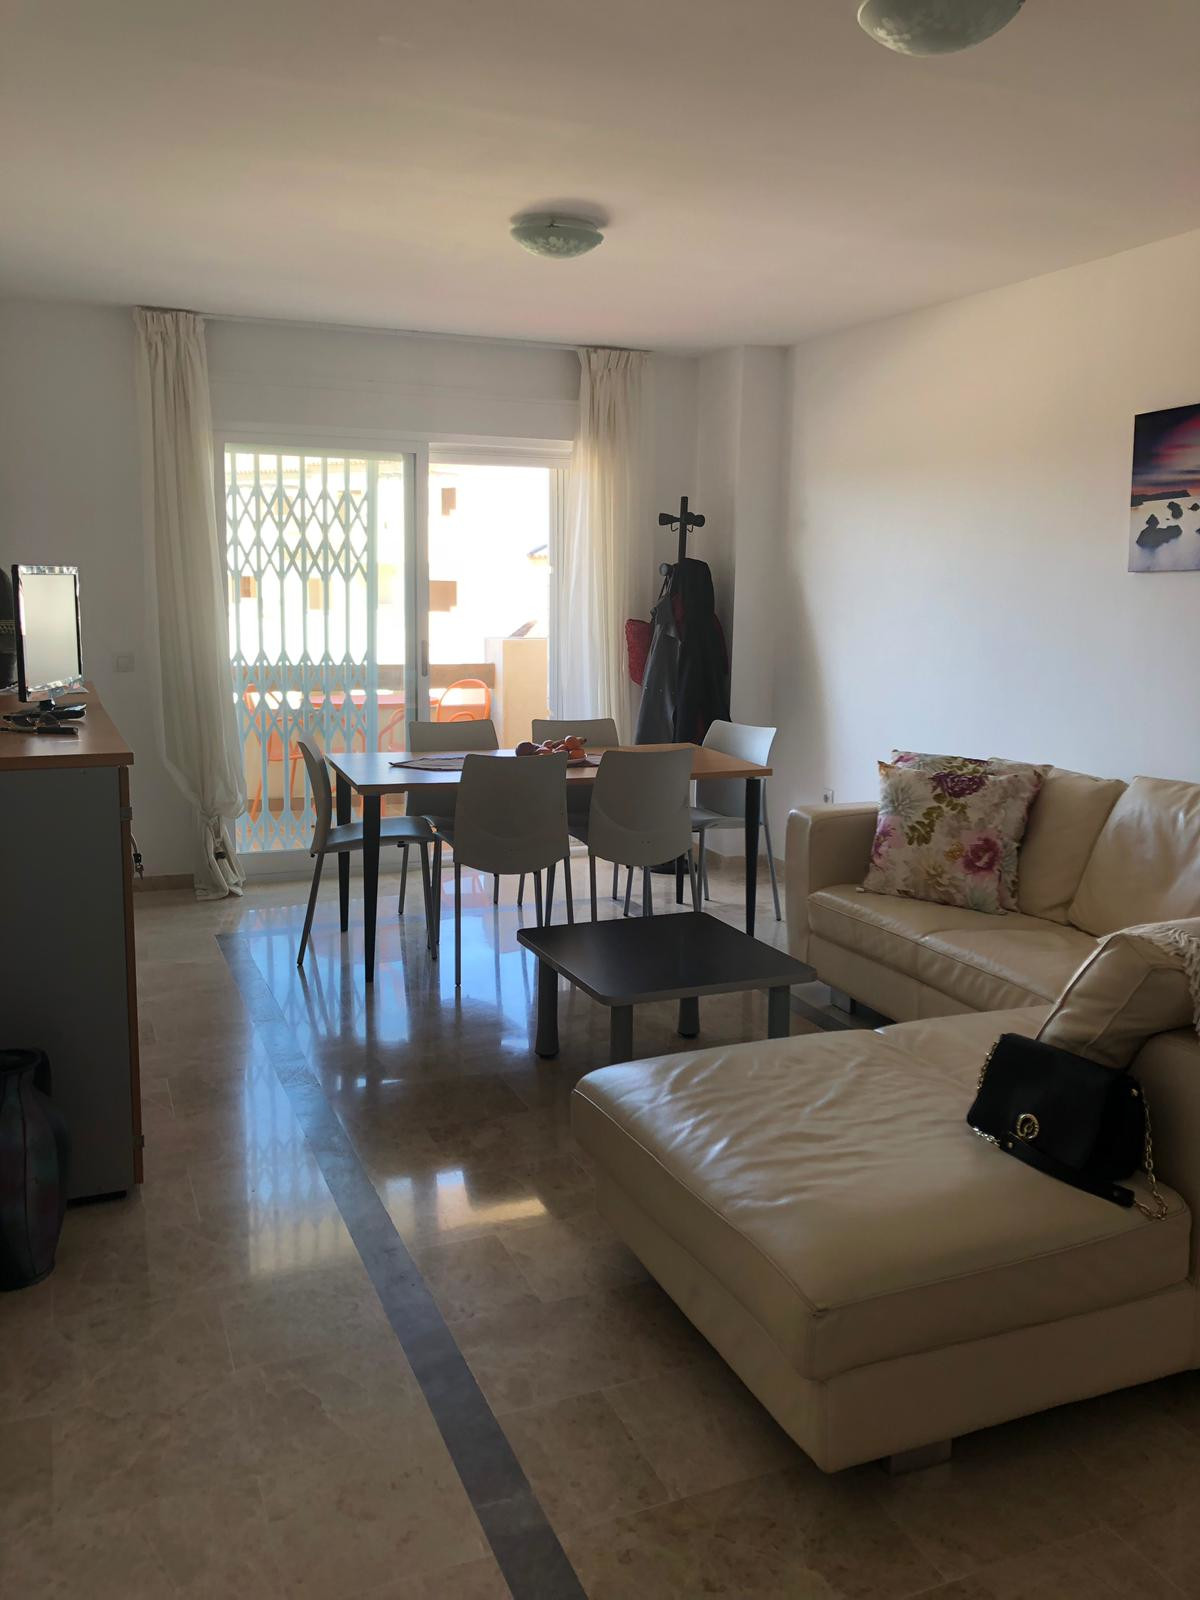 Middle Floor Apartment, Manilva, Costa del Sol.
2 Bedrooms, 1 Bathroom, Built 75 m², Terrace 8 m².

, Spain